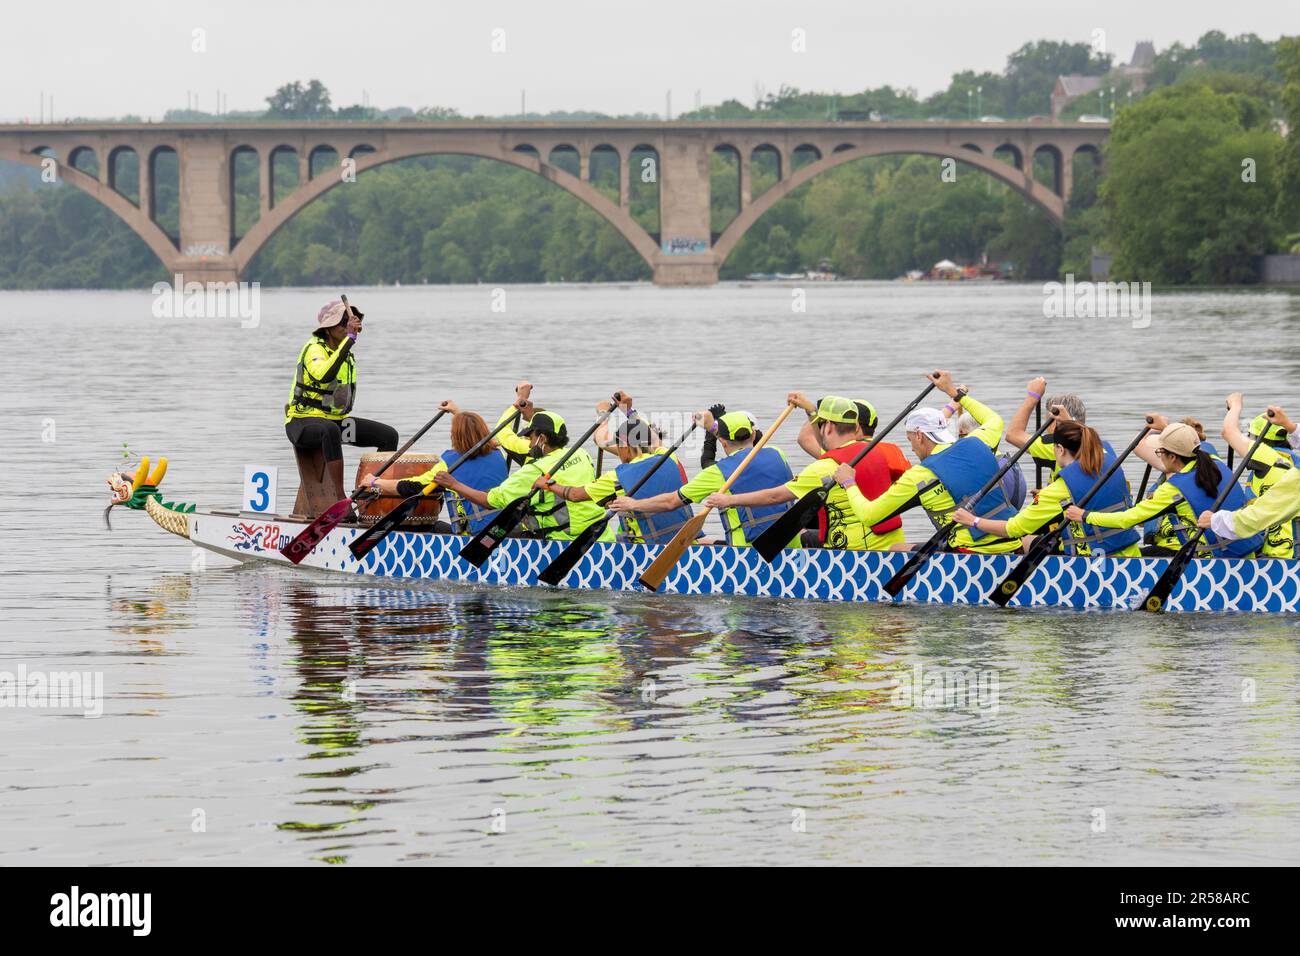 Washington, DC - Los Dragones Fuera de la Vista, un equipo de atletas ciegos y discapacitados visuales, participan en el DC Dragon Boat Festival en el Potomac R. Foto de stock